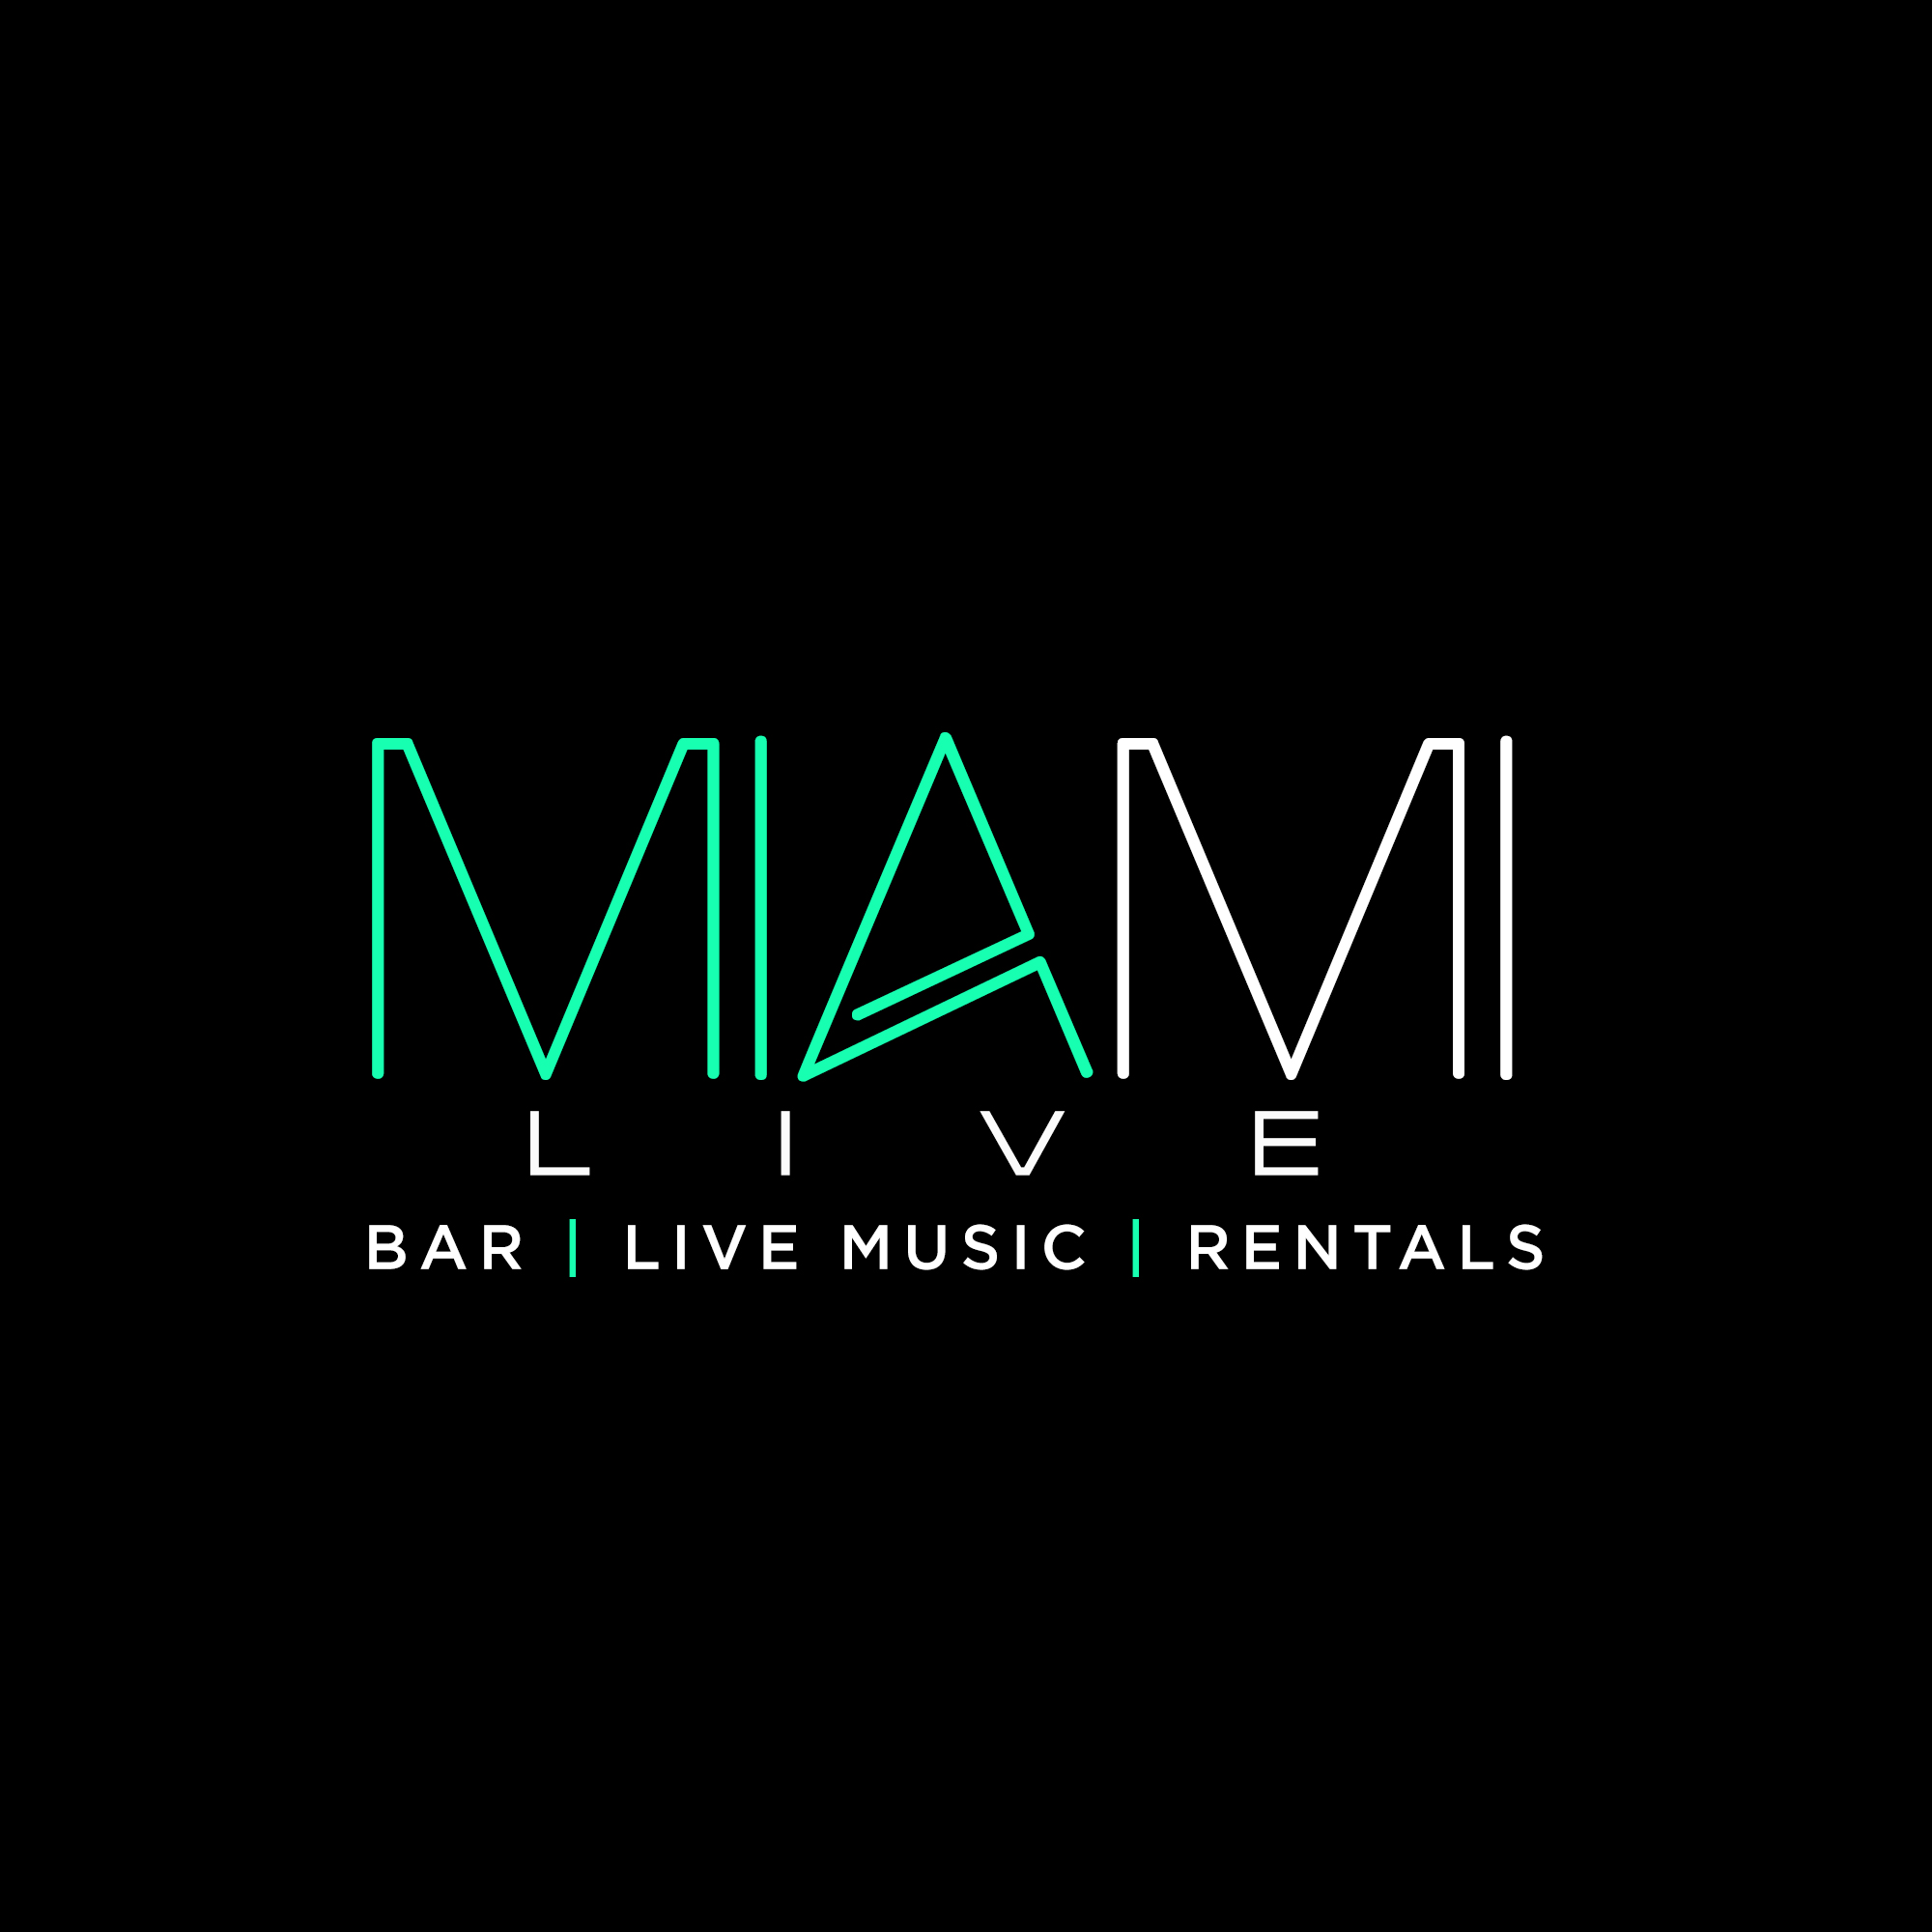 Miami LIVE - Event Venue & Bar in Miami Beach, FL